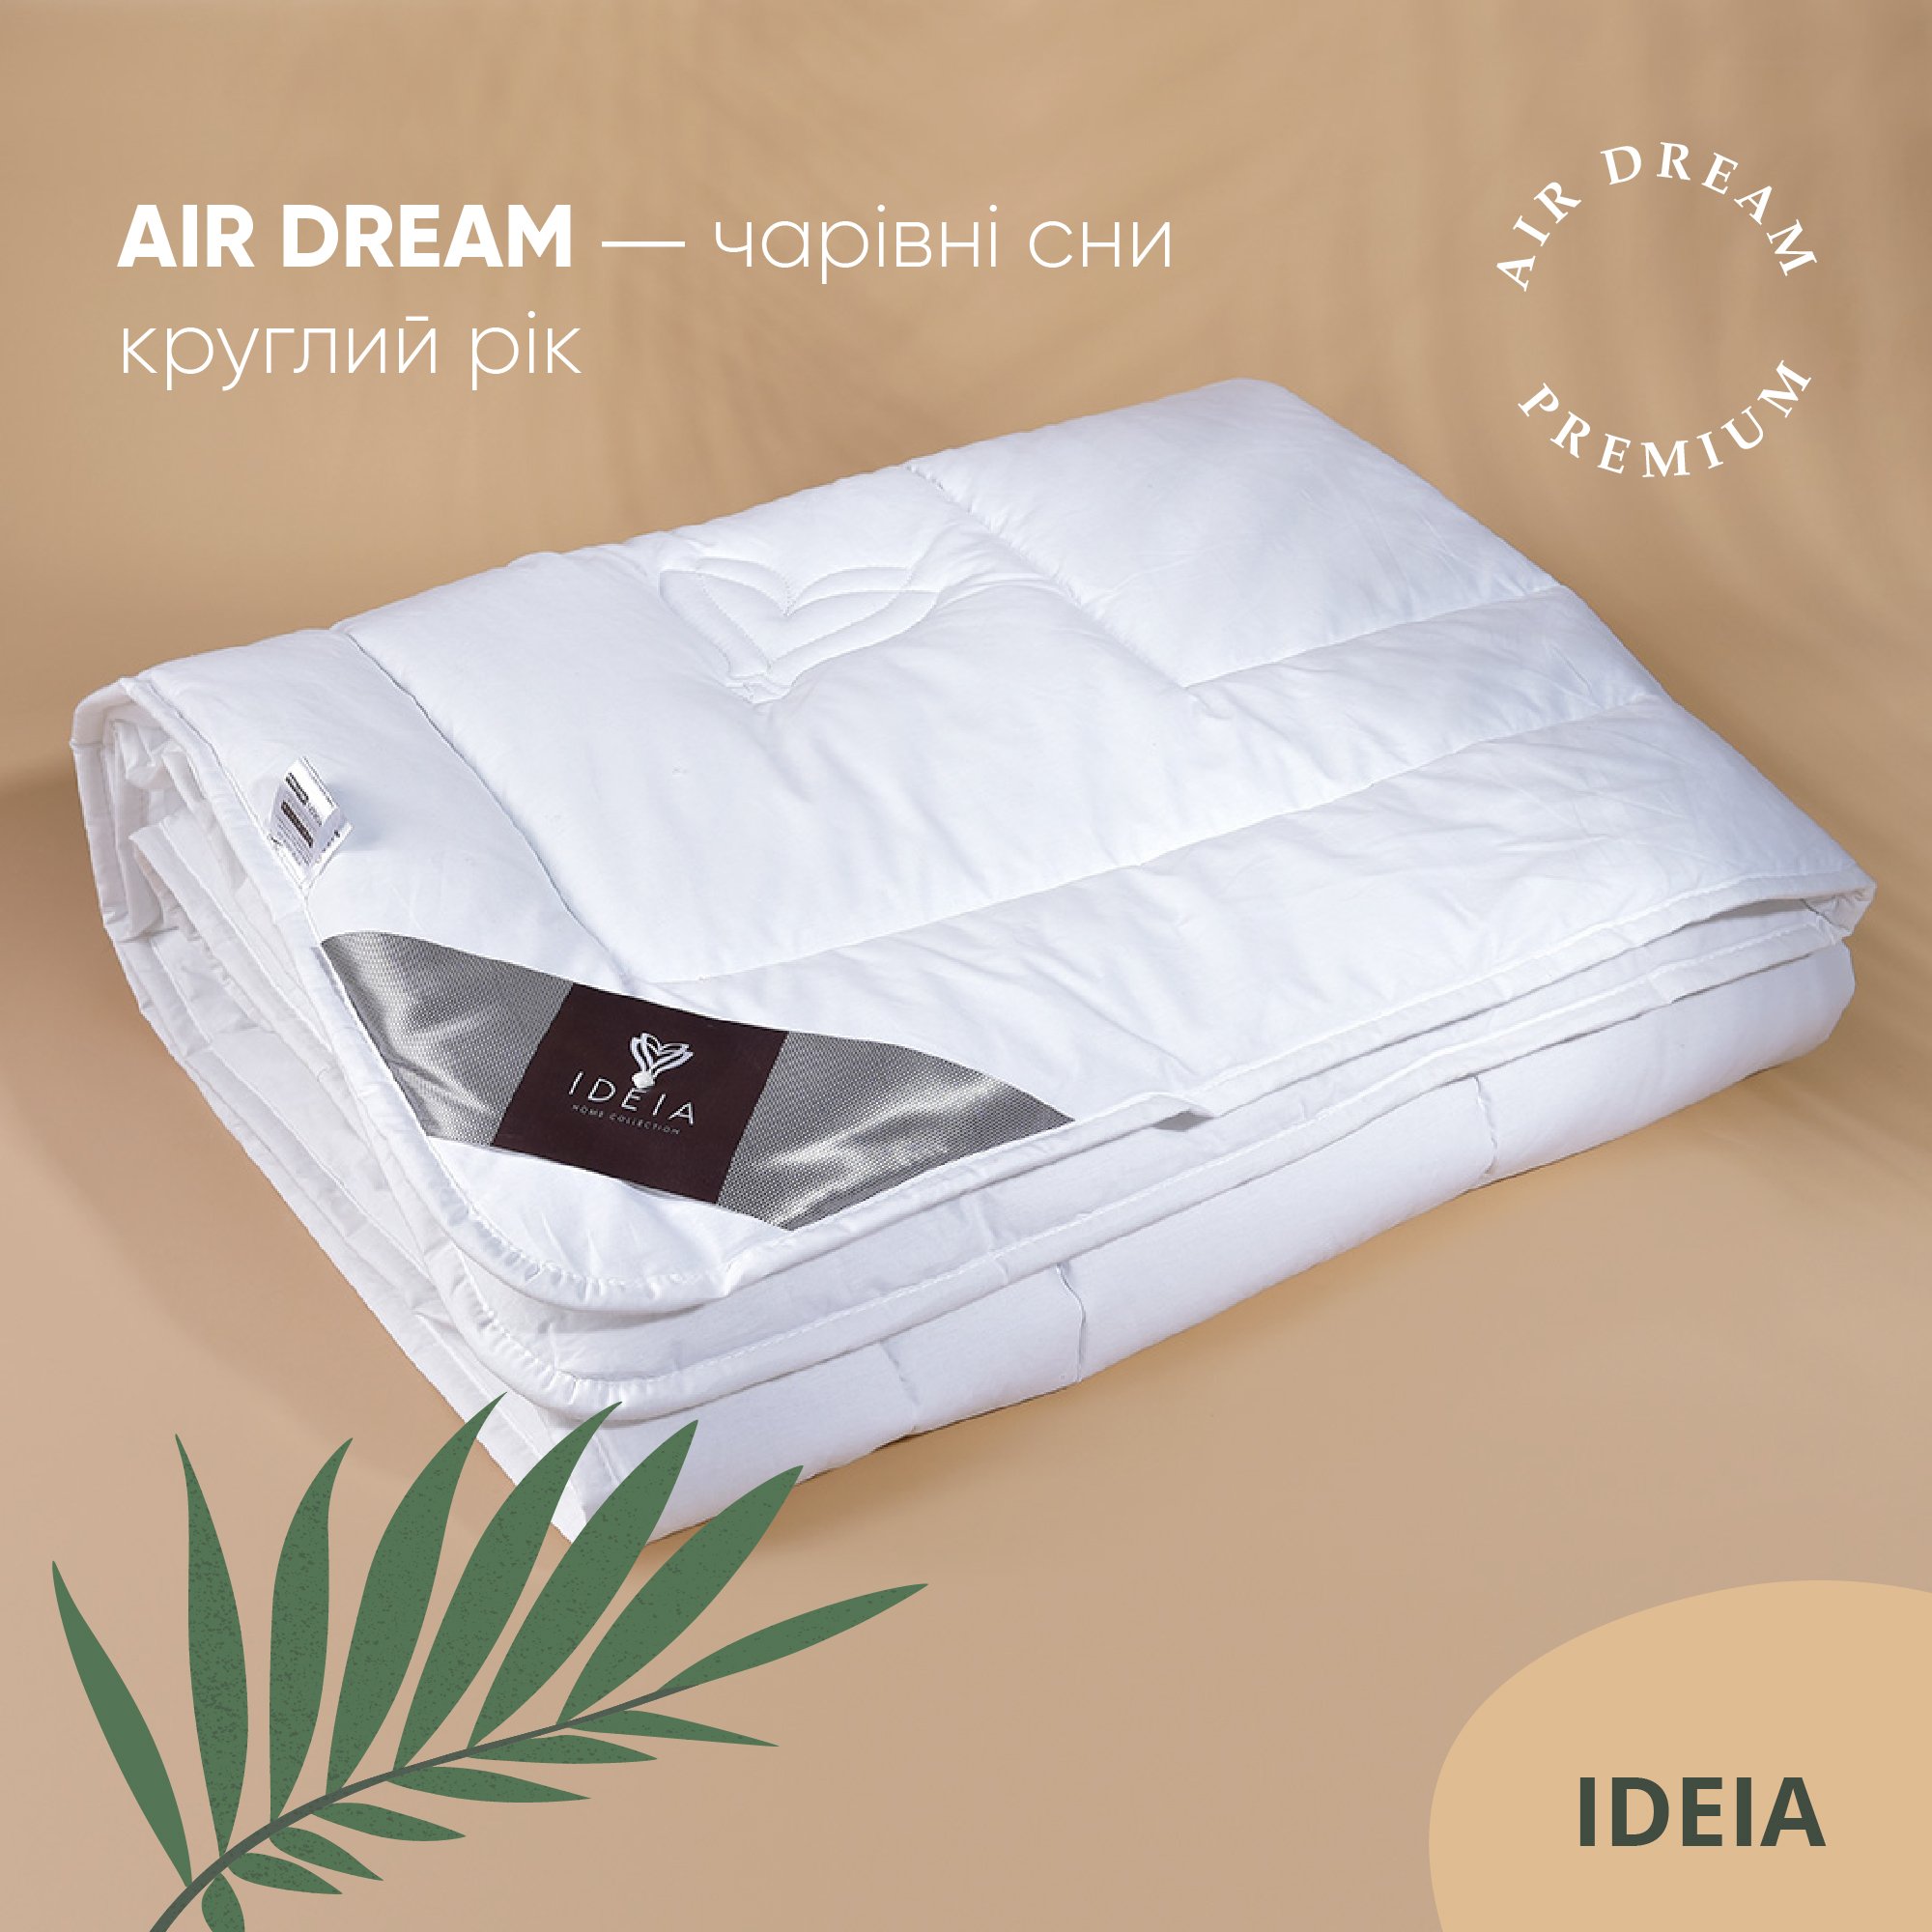 Ковдра Ideia Air Dream Premium зимова, 215х155, білий (8-11694) - фото 7